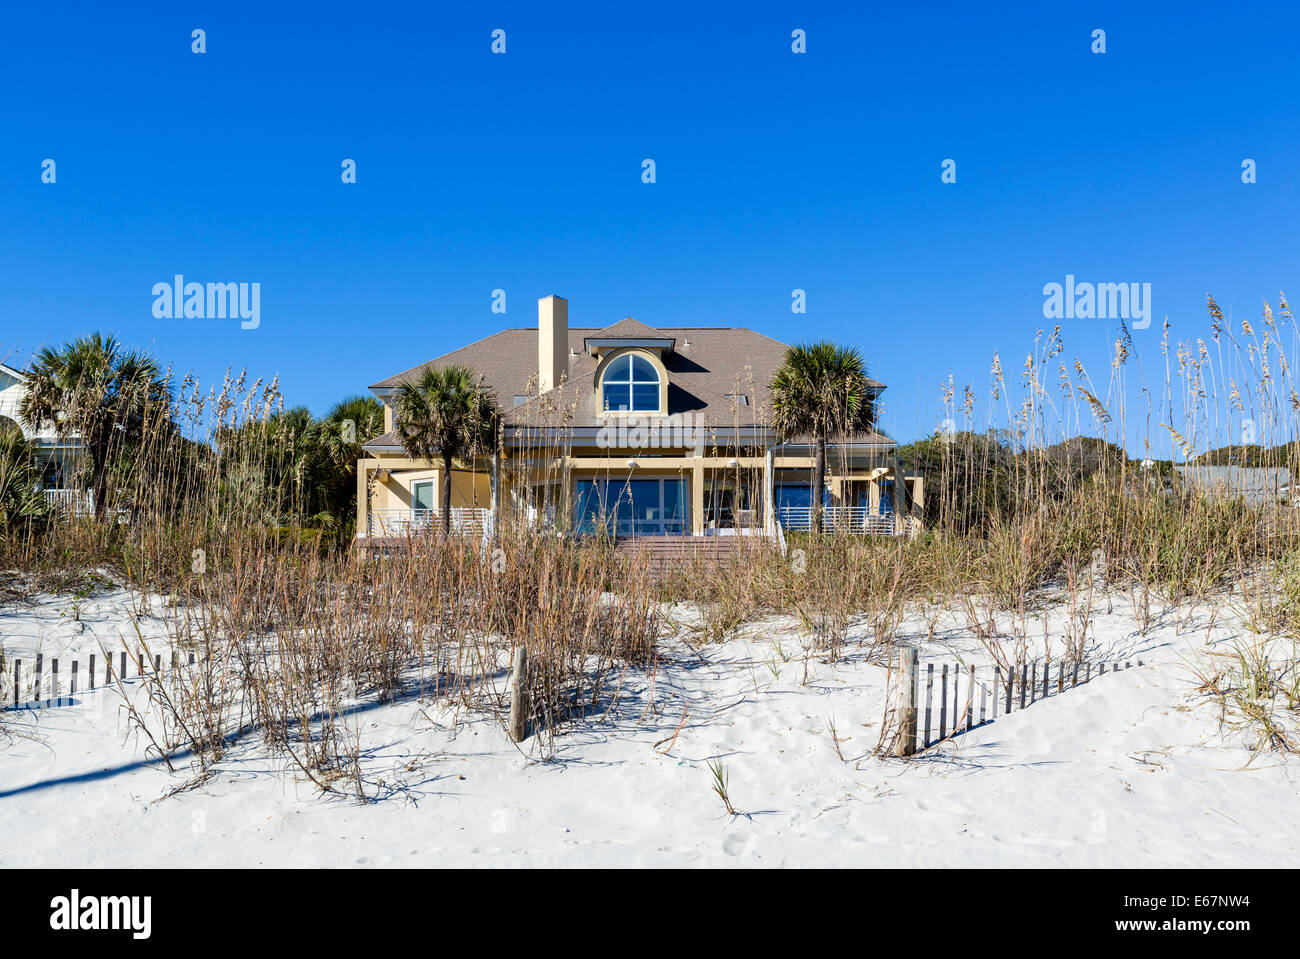 Maison en bord de mer typique à l'extrémité nord de Myrtle Beach, Caroline du Sud, USA Banque D'Images